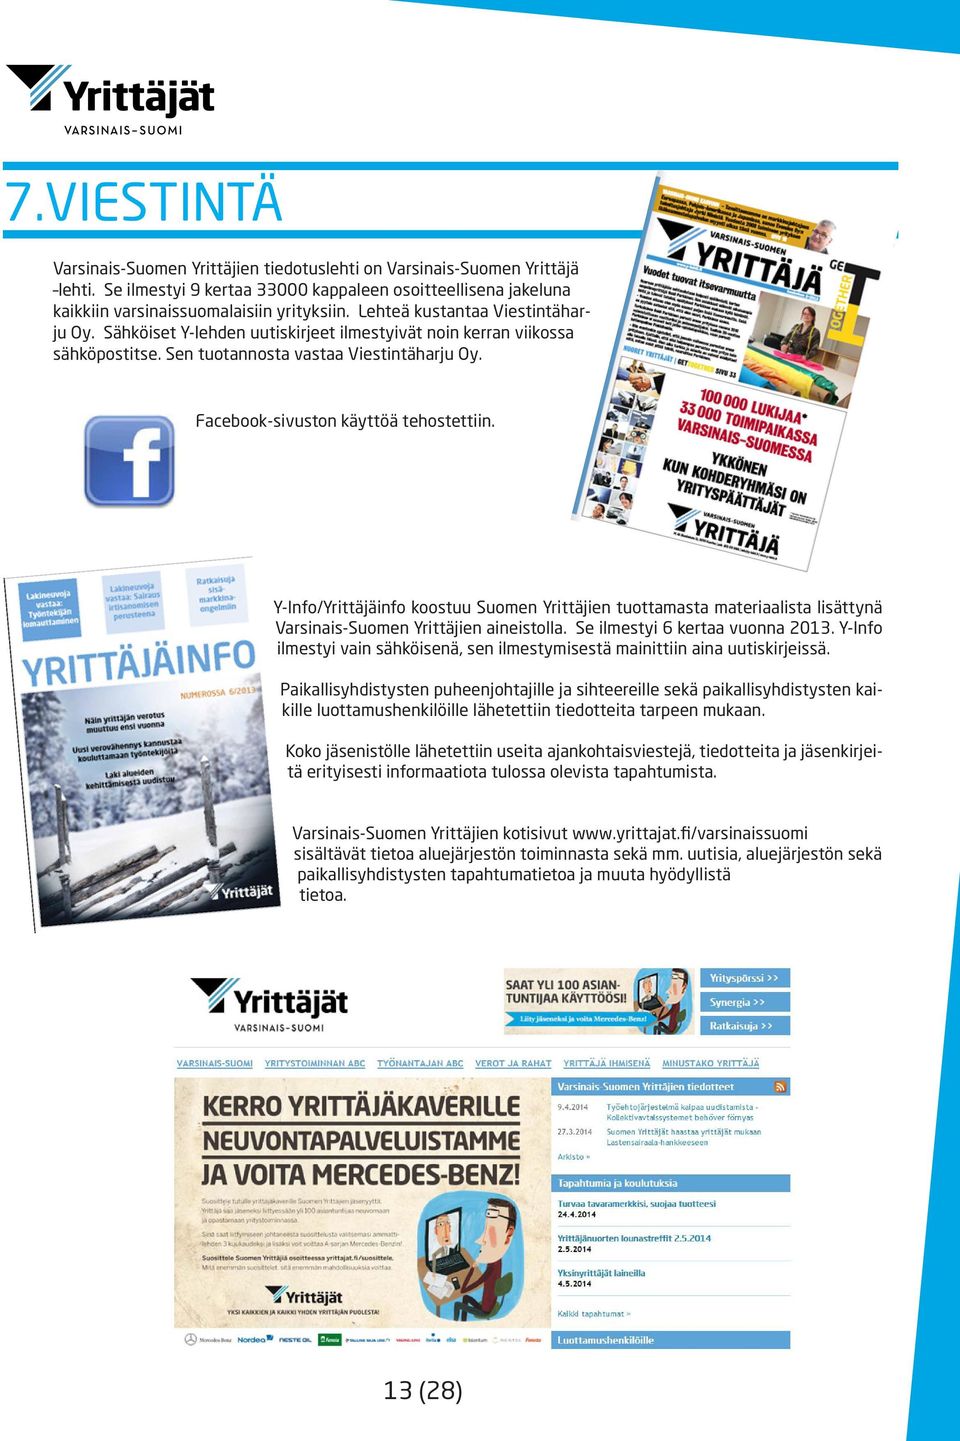 Y-Info/Yrittäjäinfo koostuu Suomen Yrittäjien tuottamasta materiaalista lisättynä Varsinais-Suomen Yrittäjien aineistolla. Se ilmestyi 6 kertaa vuonna 2013.